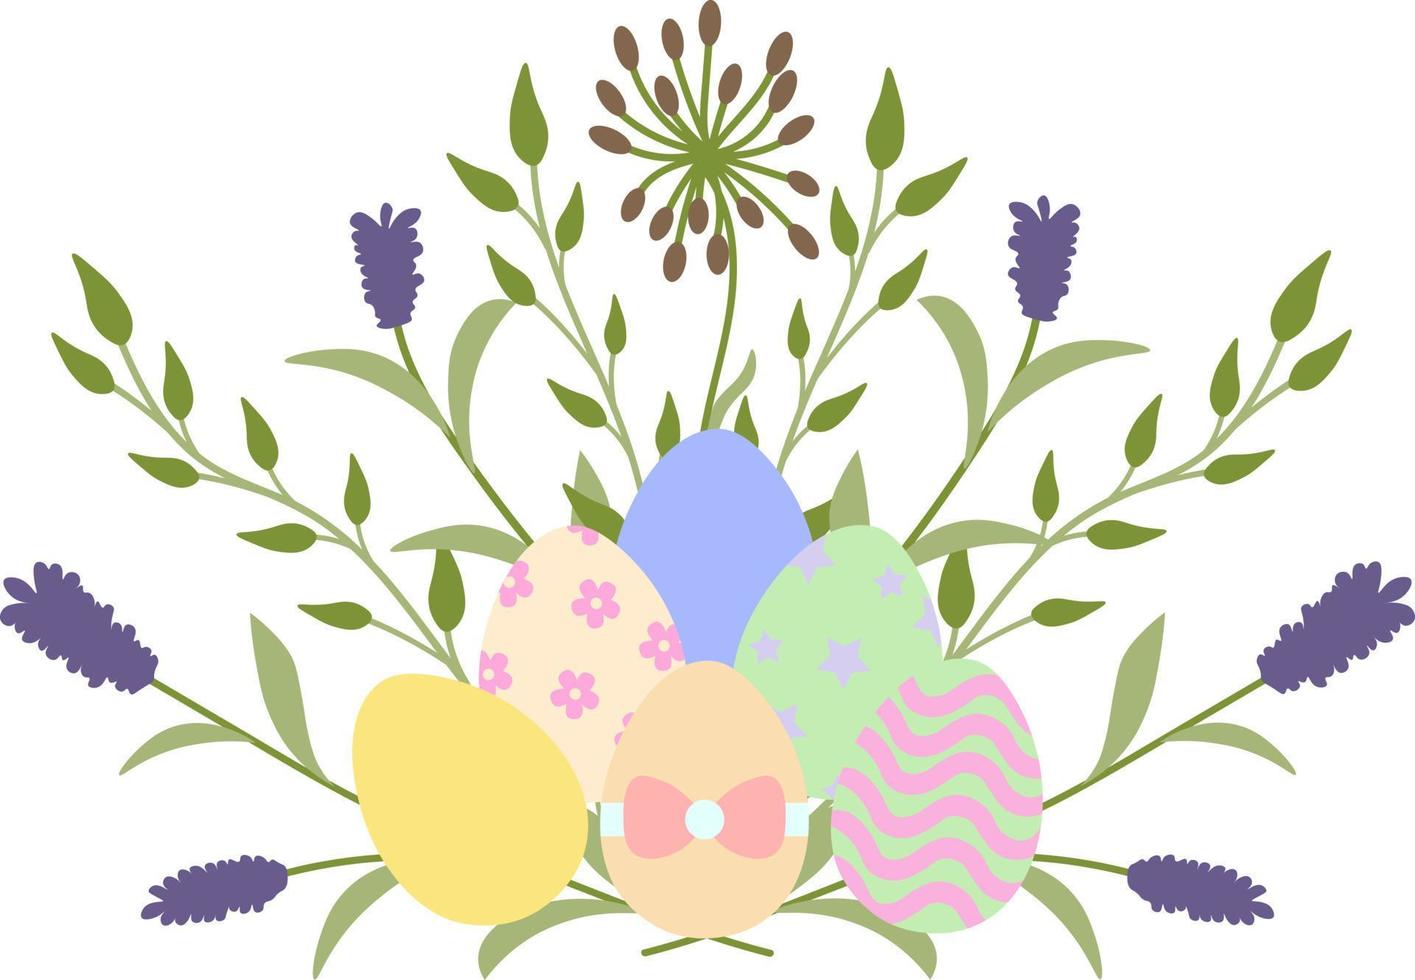 påsk ClipArt, vektor teckning. påsk söt kaniner, korg, påsk ägg, blommor och örter